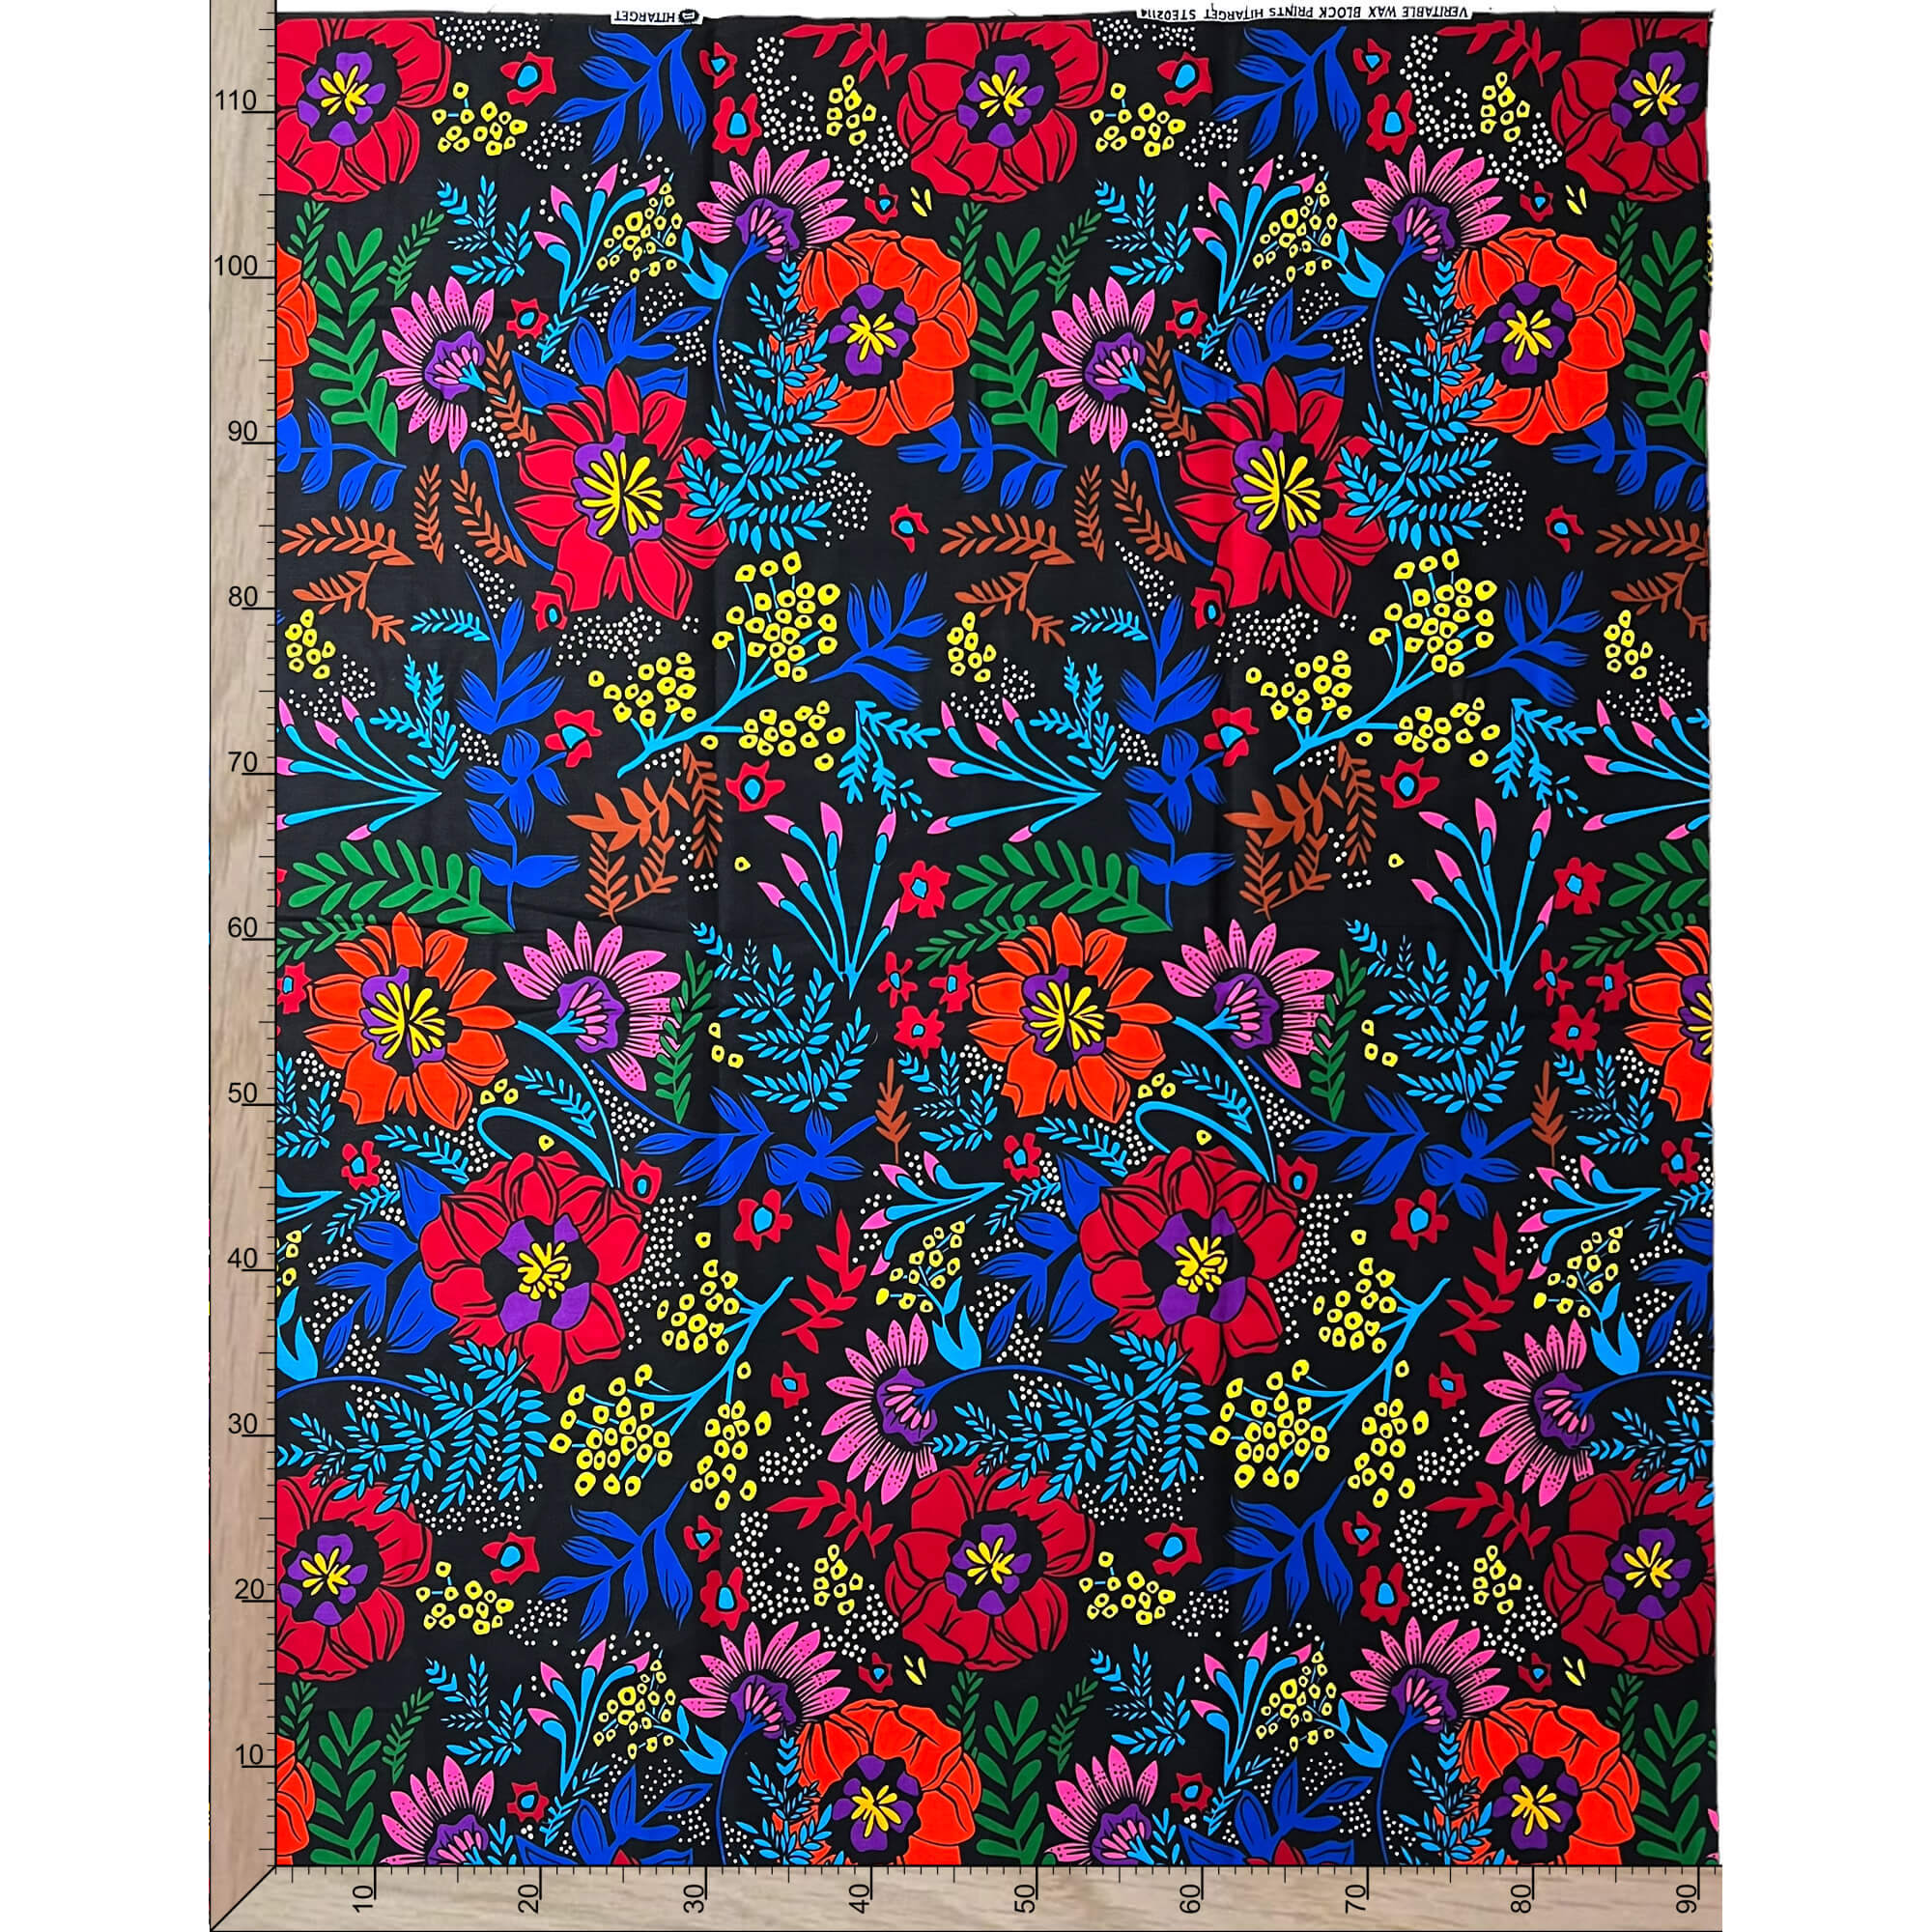 Tissu - Wax 100% coton - Fleurs - Multi-couleurs